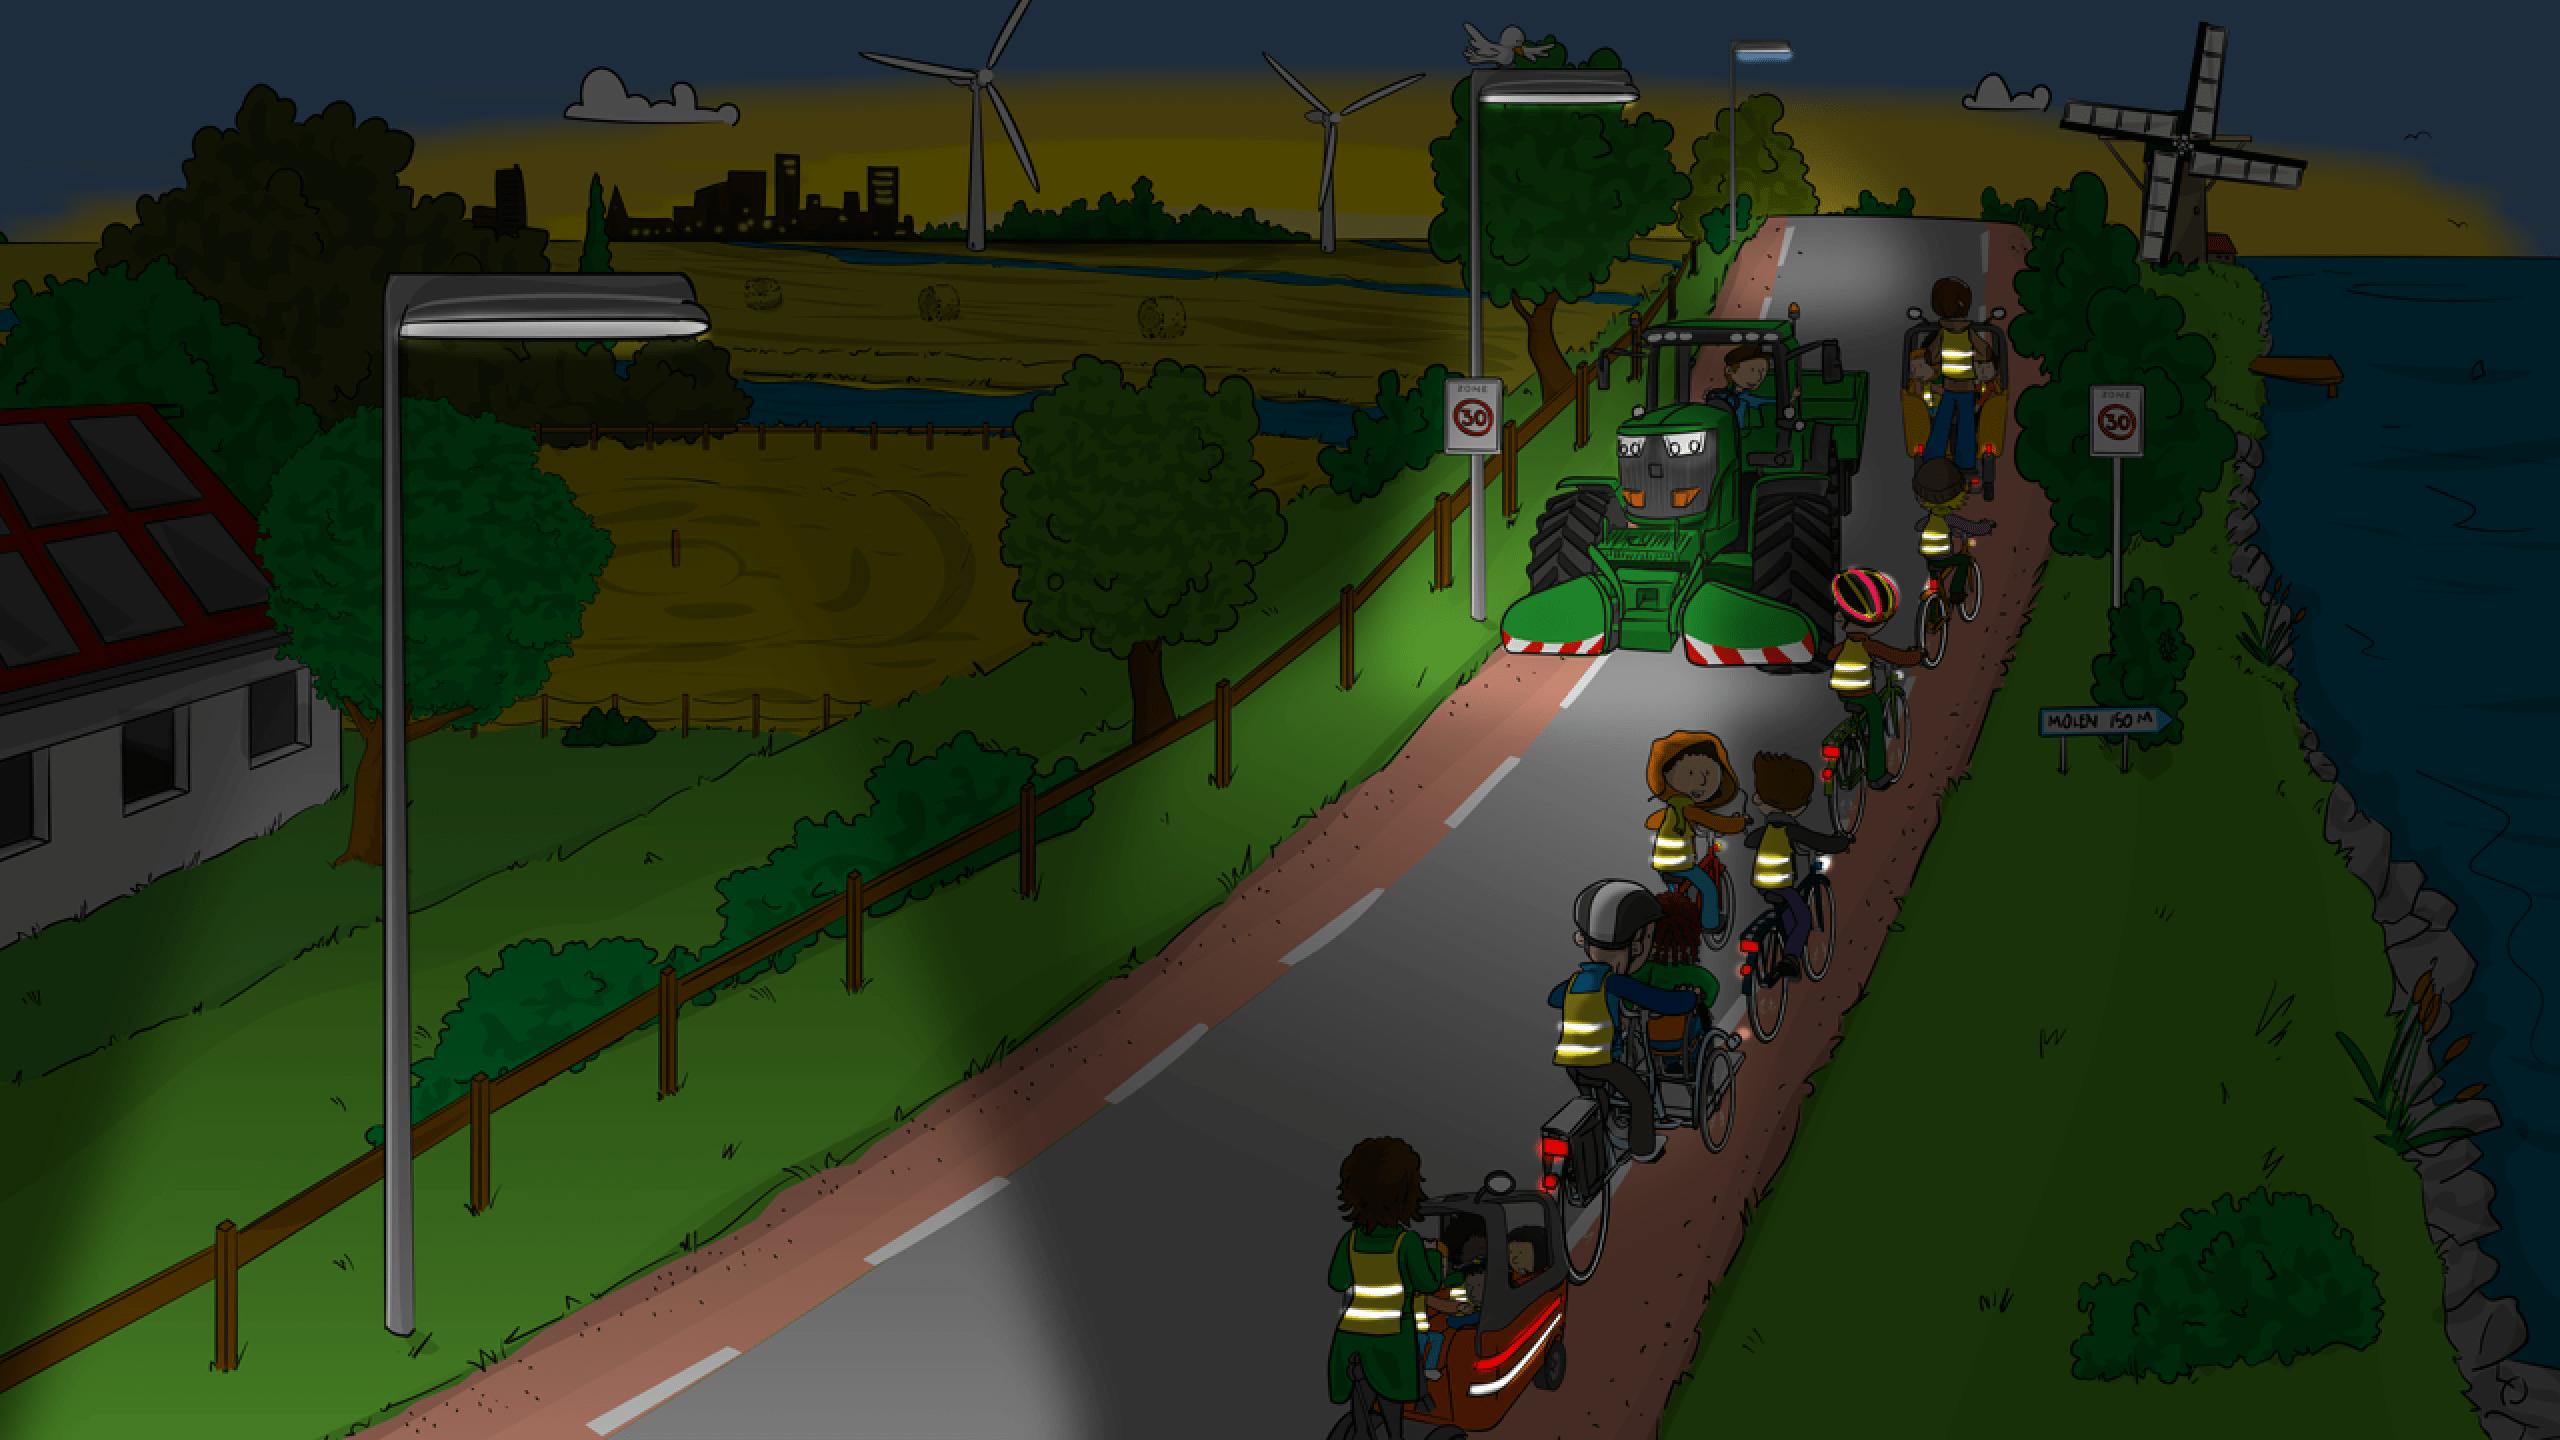 Illustratie landbouwvoertuig met licht aan op een donkere weg komt naar school gaande kinderen op de fiets tegen met veiligheidshesjes 